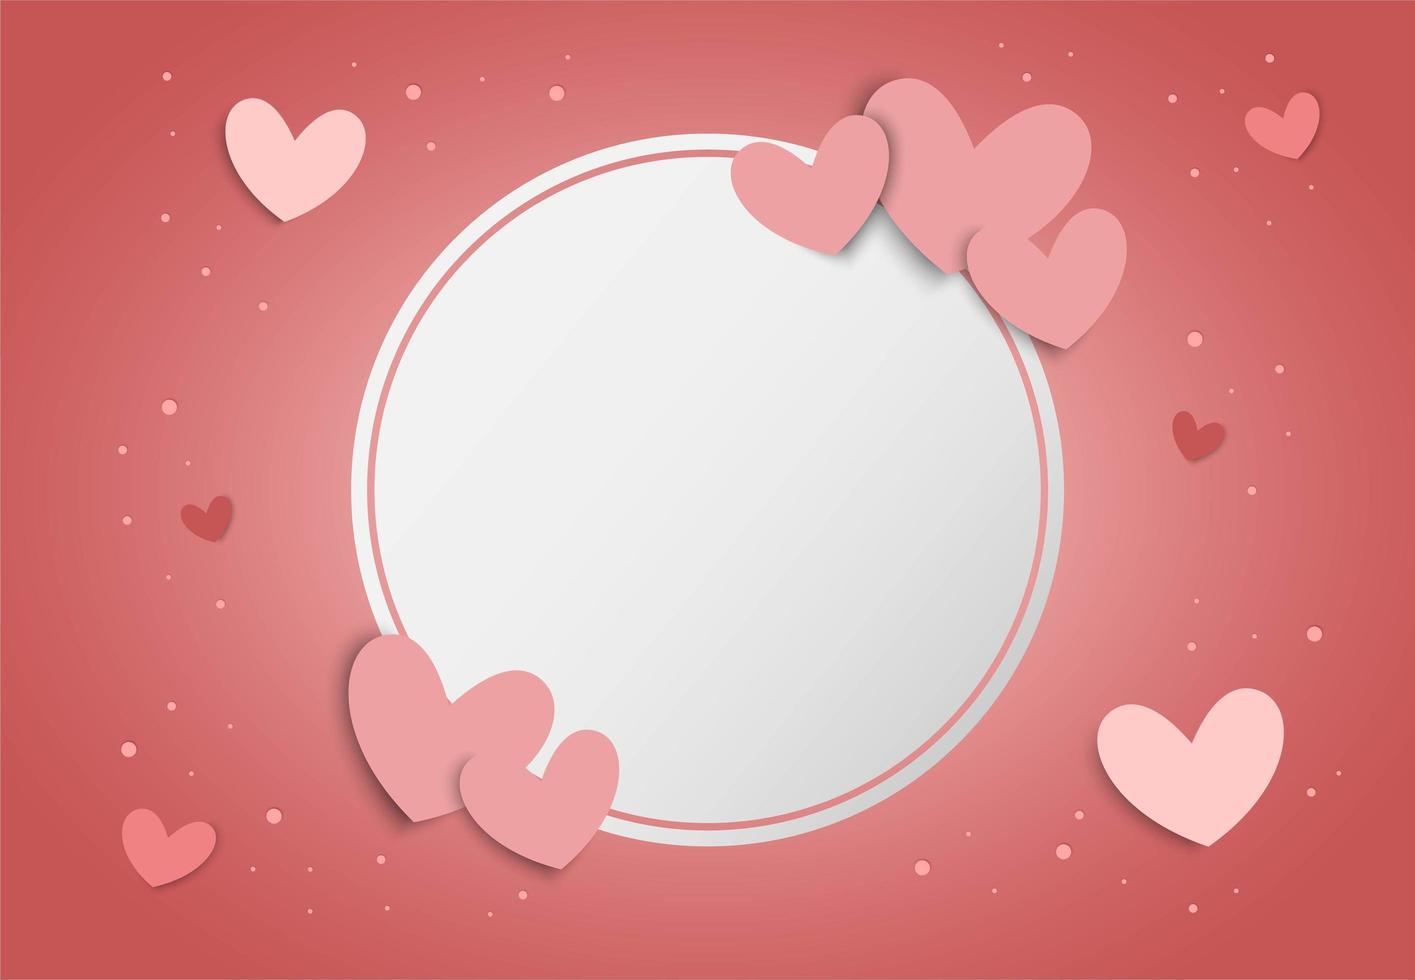 De achtergrond van de valentijnskaartendag met roze harten en leeg wit cirkelkader vector